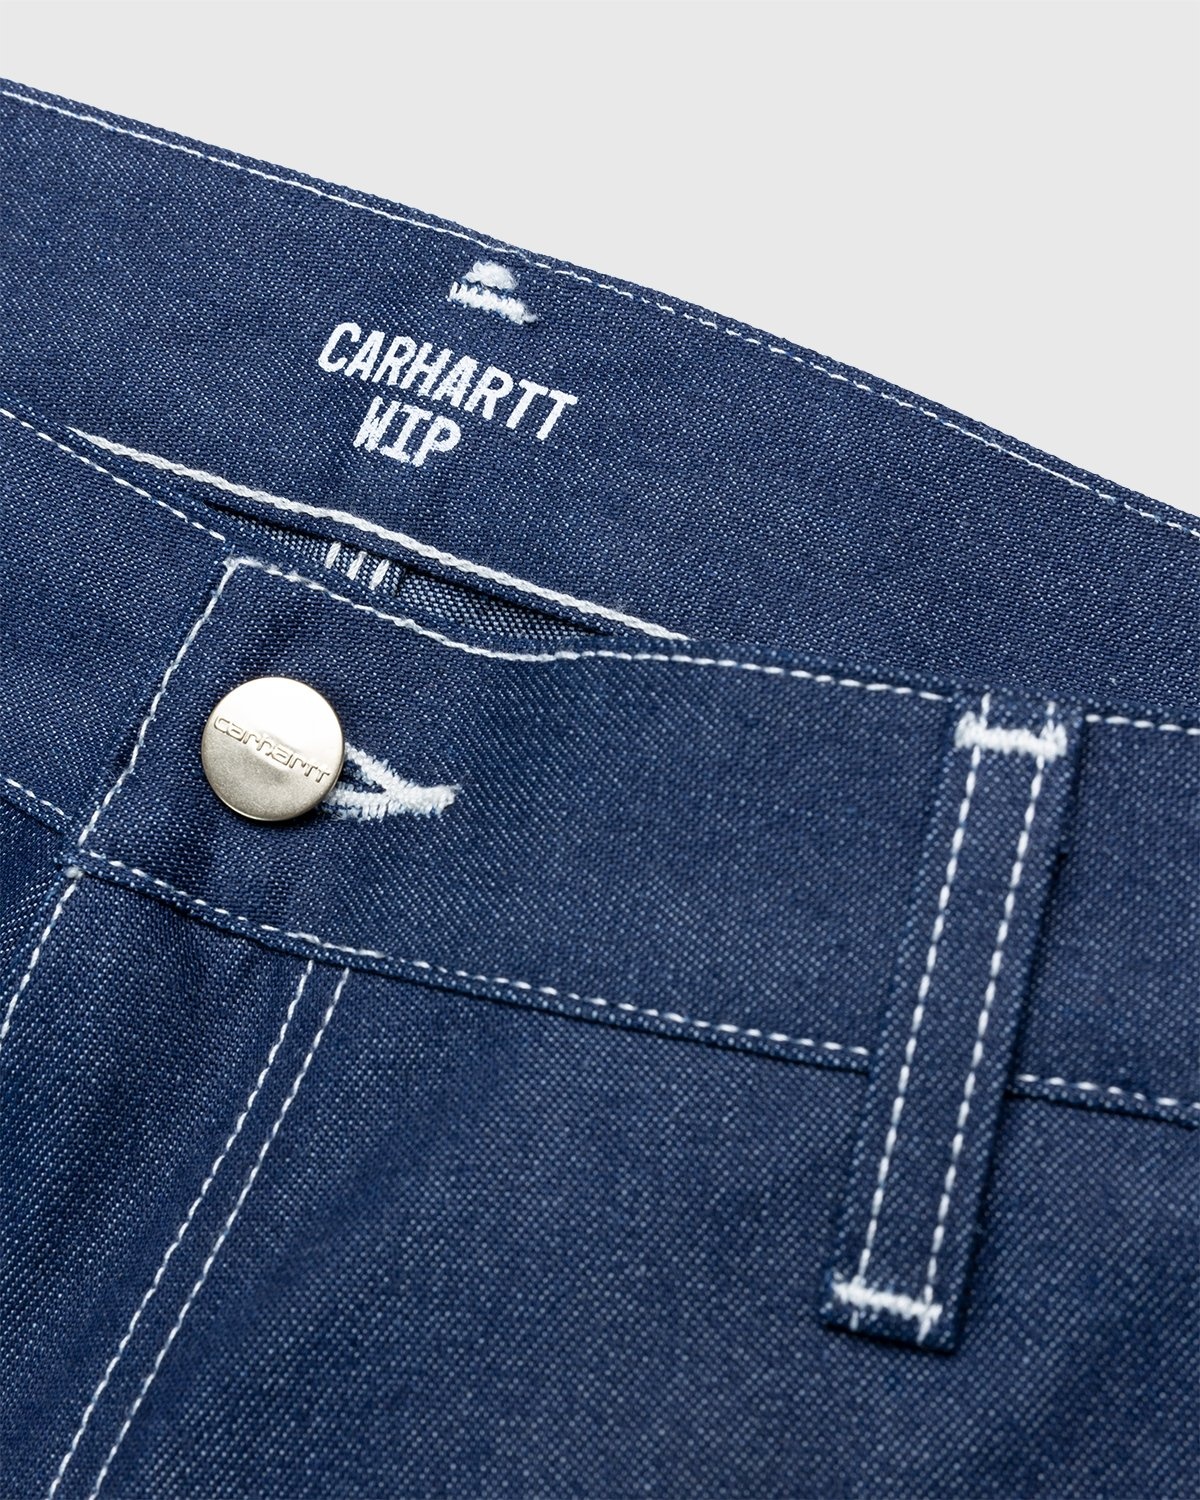 Carhartt WIP – Ruck Single Knee Pant Blue Rigid - Work Pants - Blue - Image 5